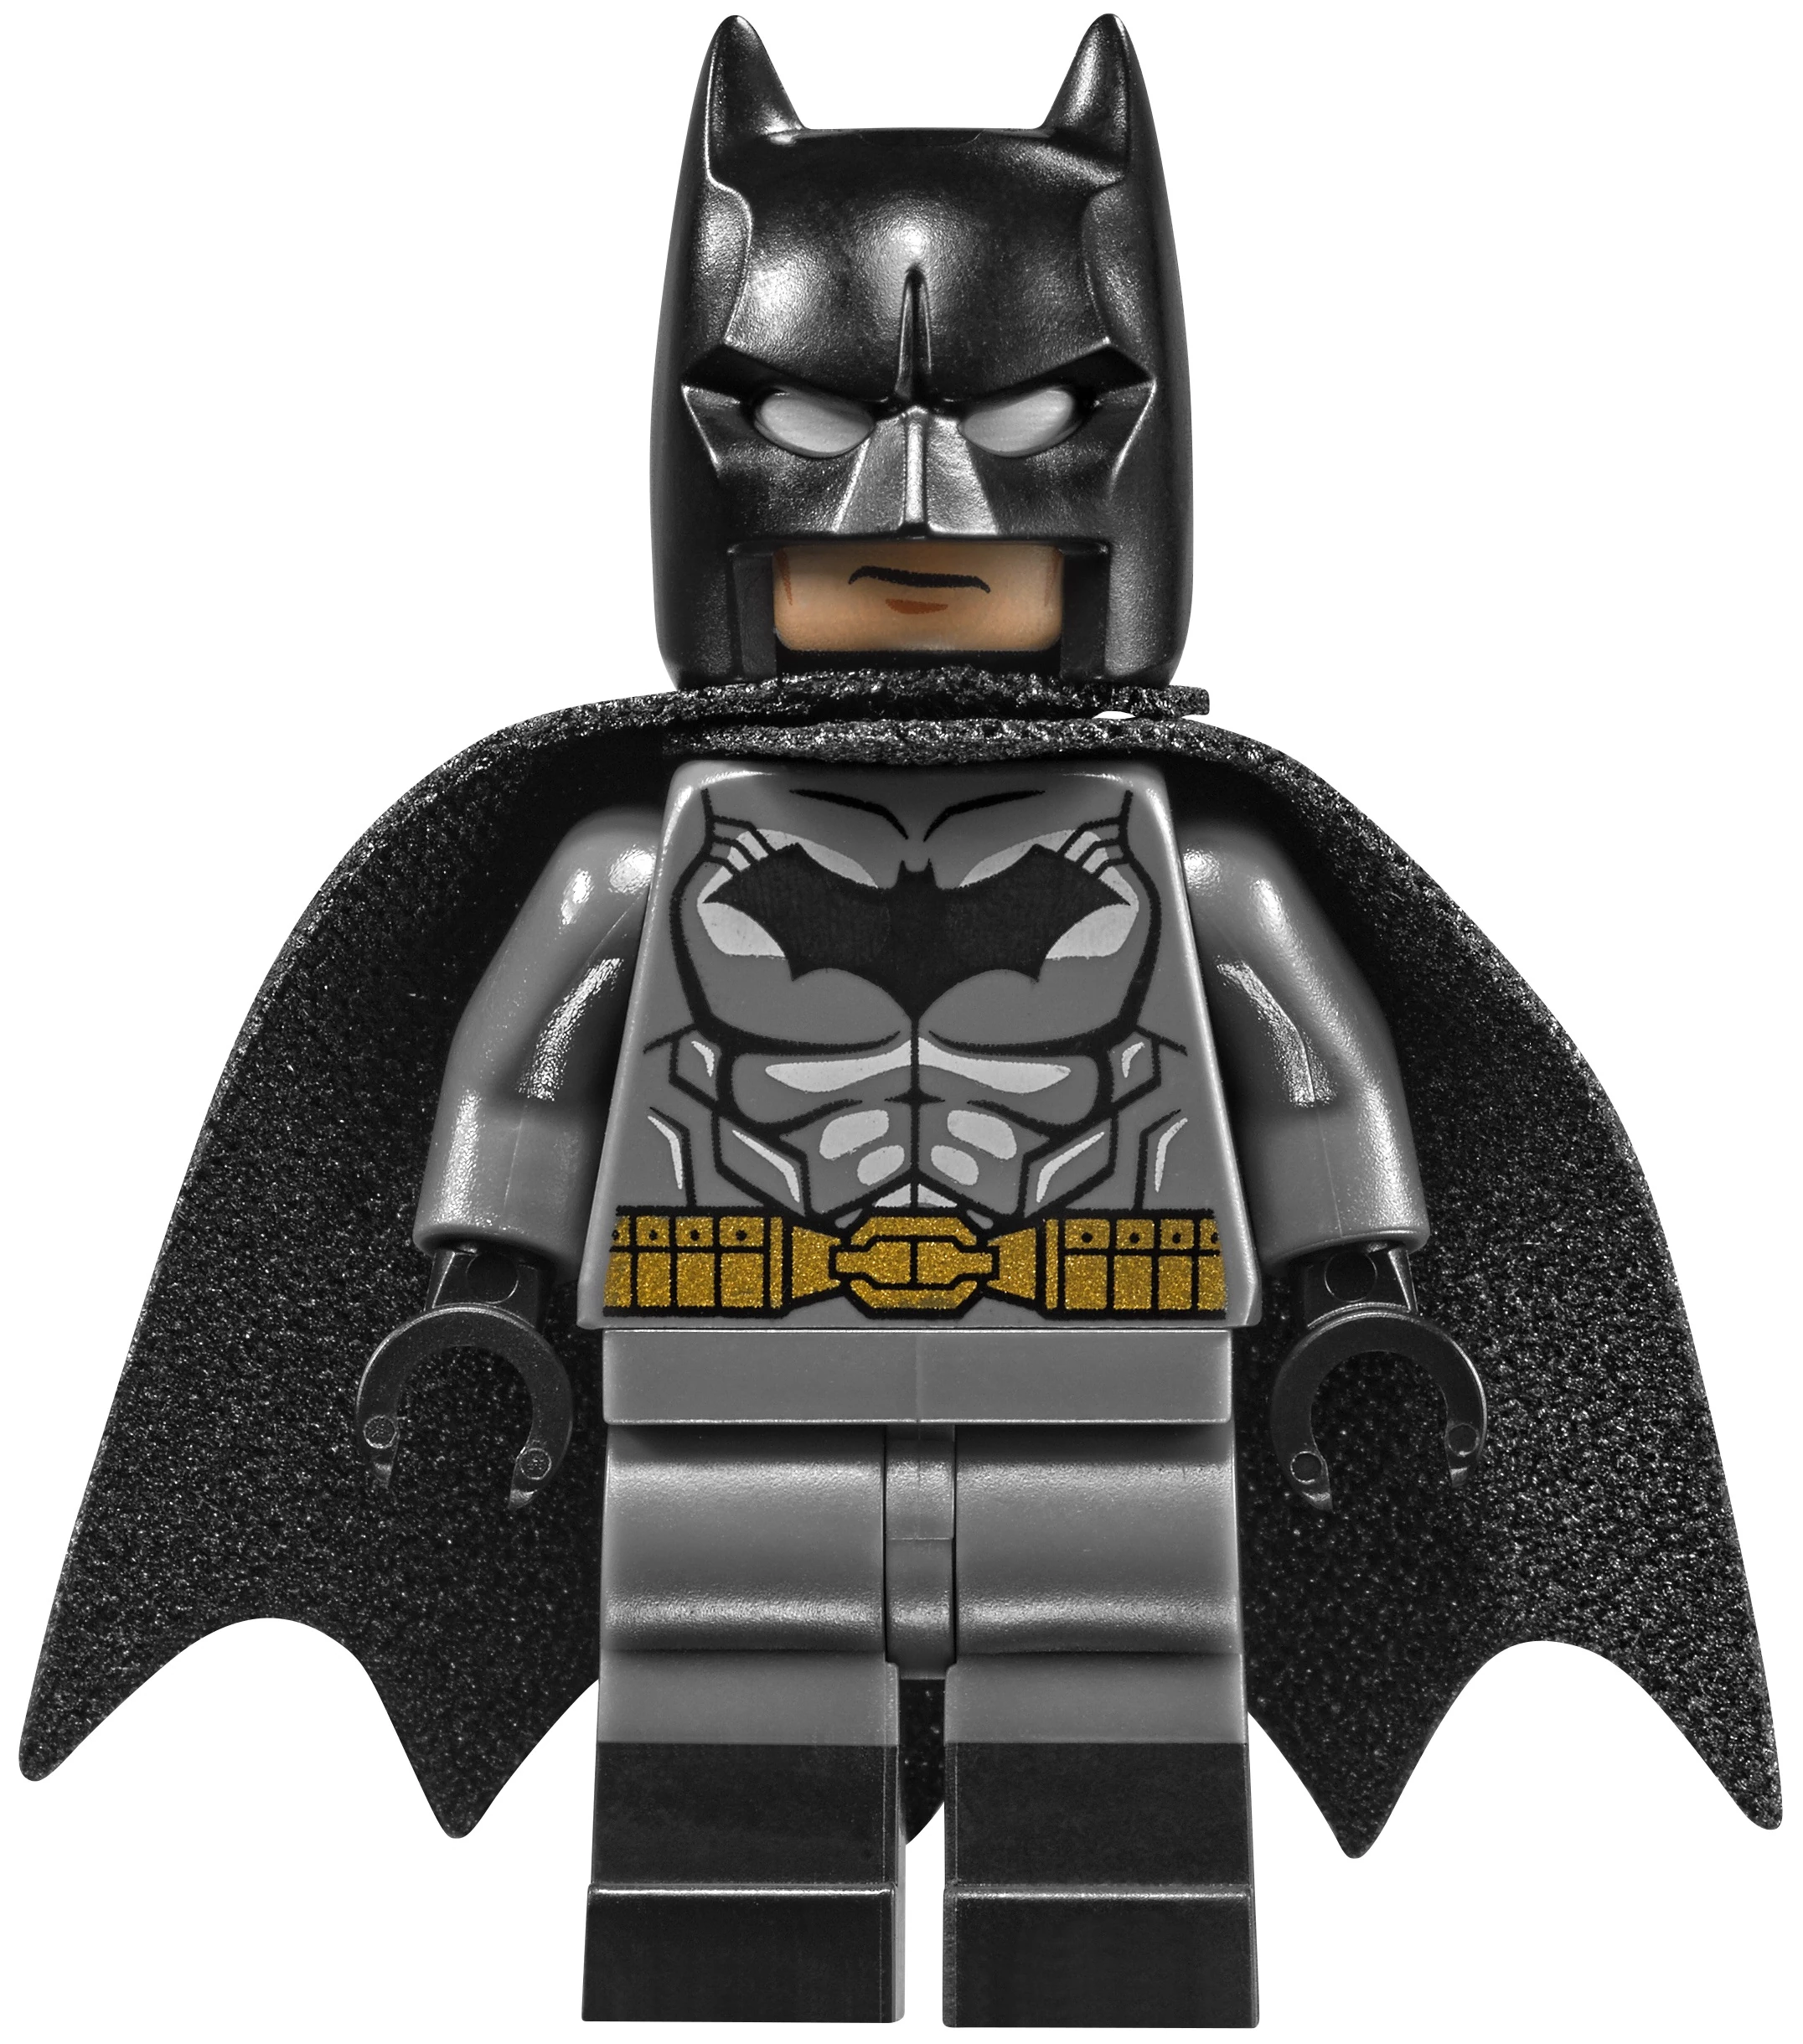 big batman lego sets